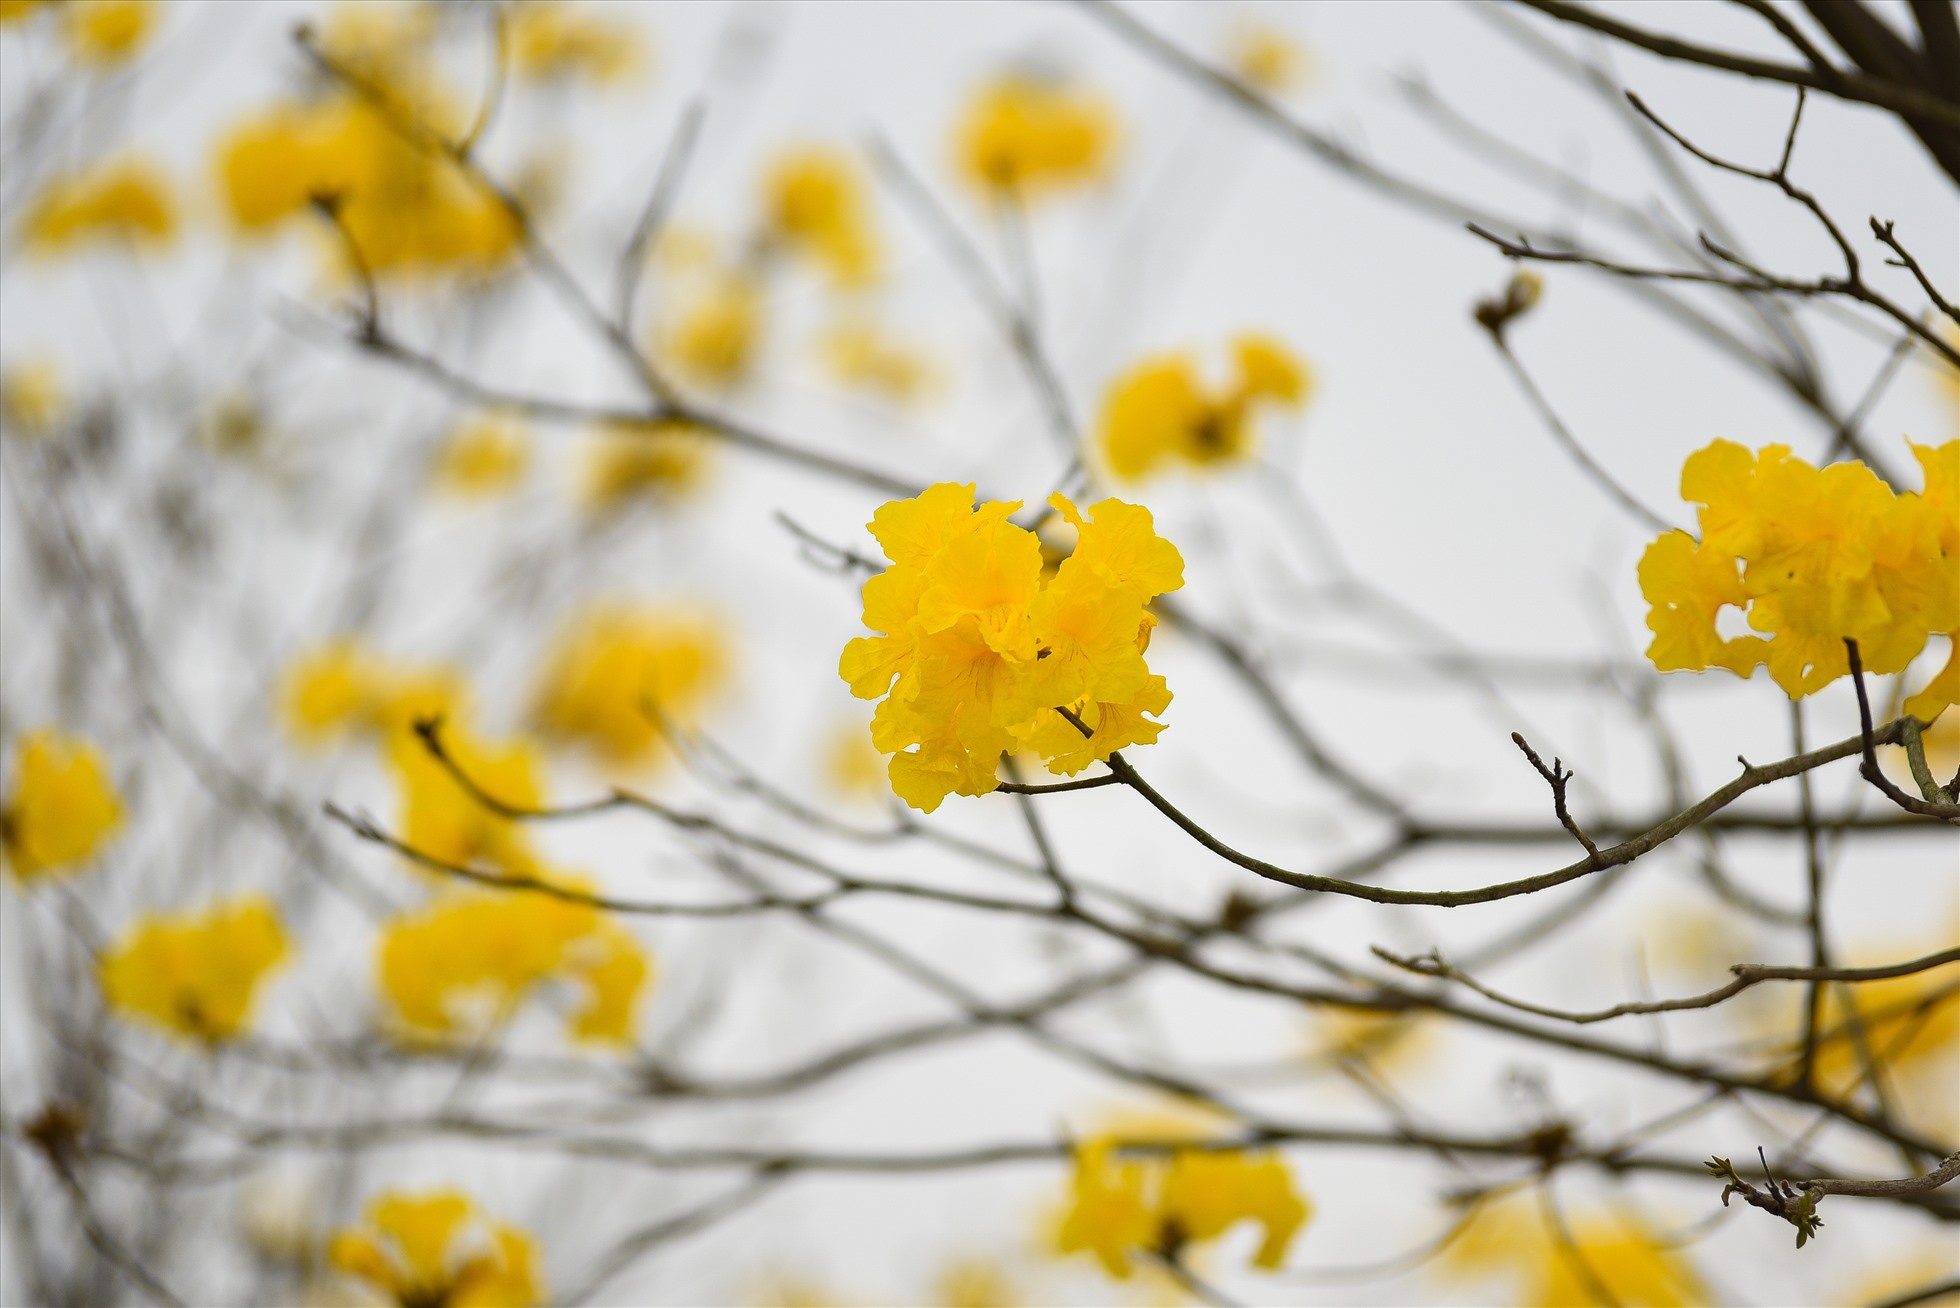 Hoa phong linh thường mọc theo cụm trông rất giống những chiếc chuông vàng. Ảnh: PHƯƠNG NAM